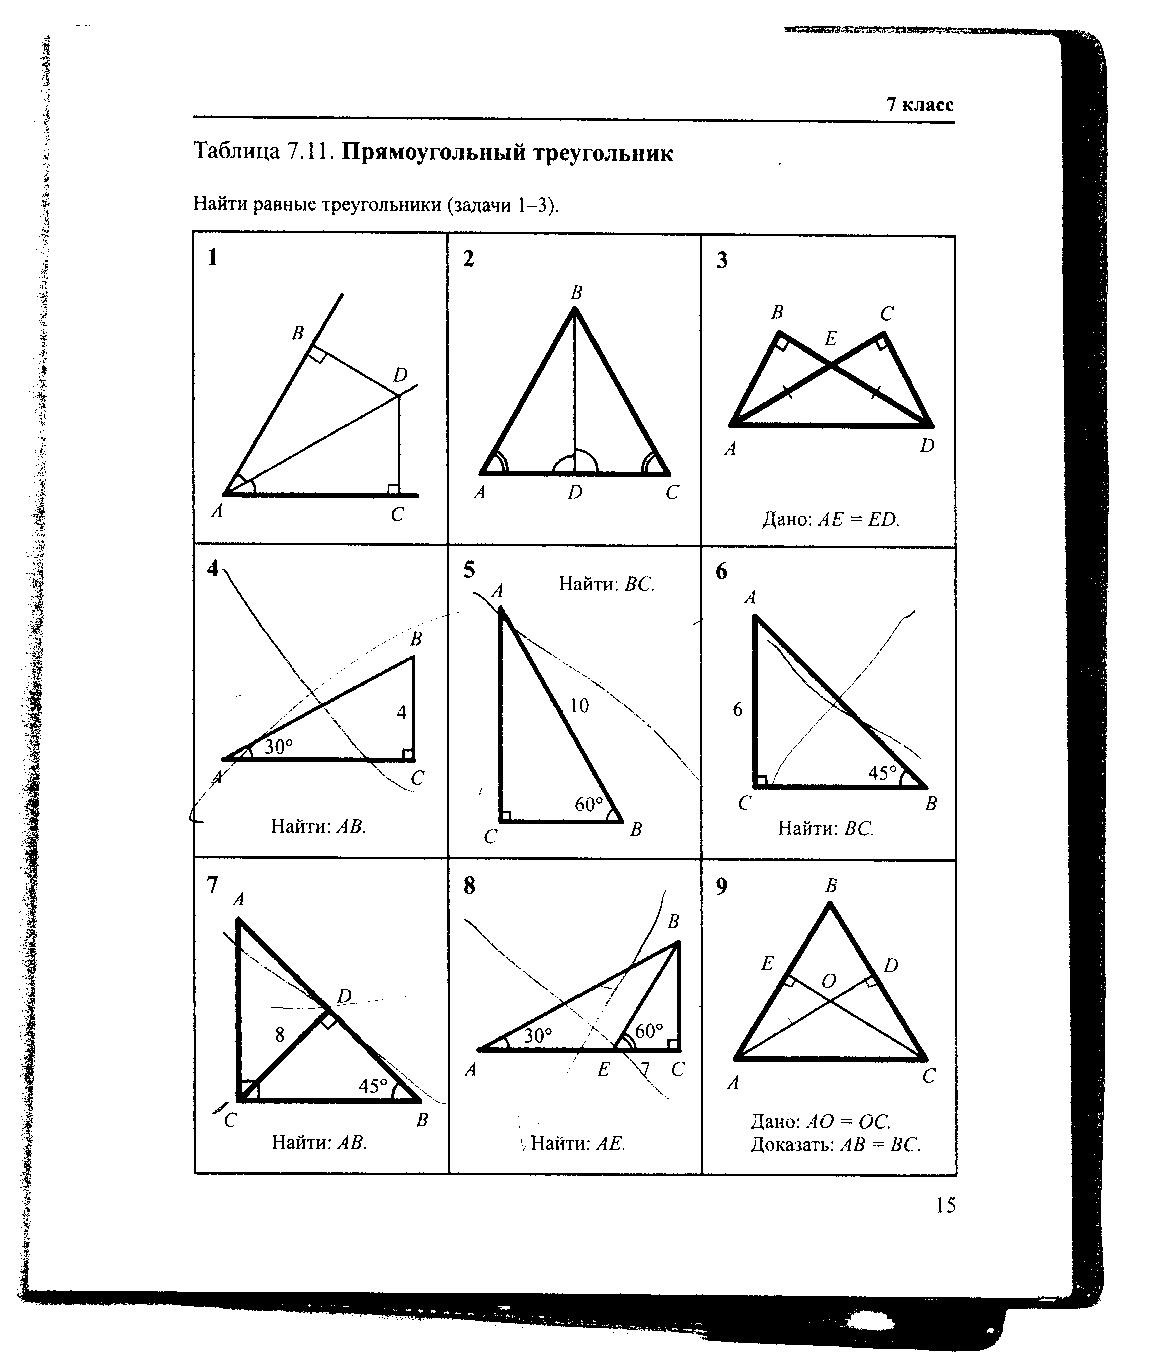 Геометрия на чертежах 7 9. Геометрия Рабинович 7-9 класс задачи на готовых чертежах. Гдз по геометрии Рабинович 7-9 класс задачи на готовых чертежах. Гдз Рабинович 7-9 класс геометрия ответы. Таблица 7.11 прямоугольный треугольник 7 класс.